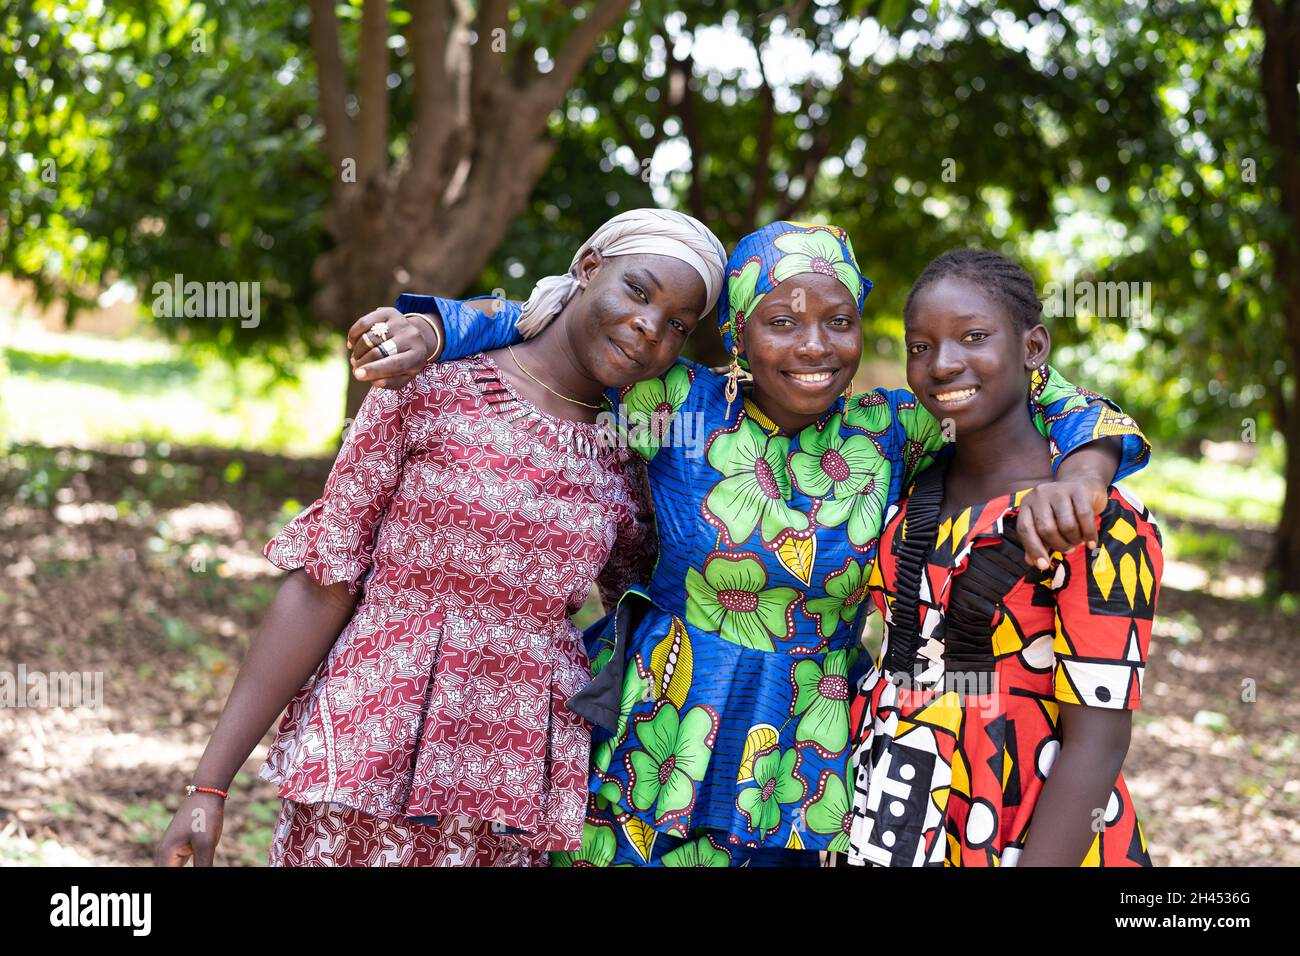 Tres mujeres jóvenes africanas radiantes con hermosos vestidos tradicionales mirando la cámara; concepto de relación humana Foto de stock